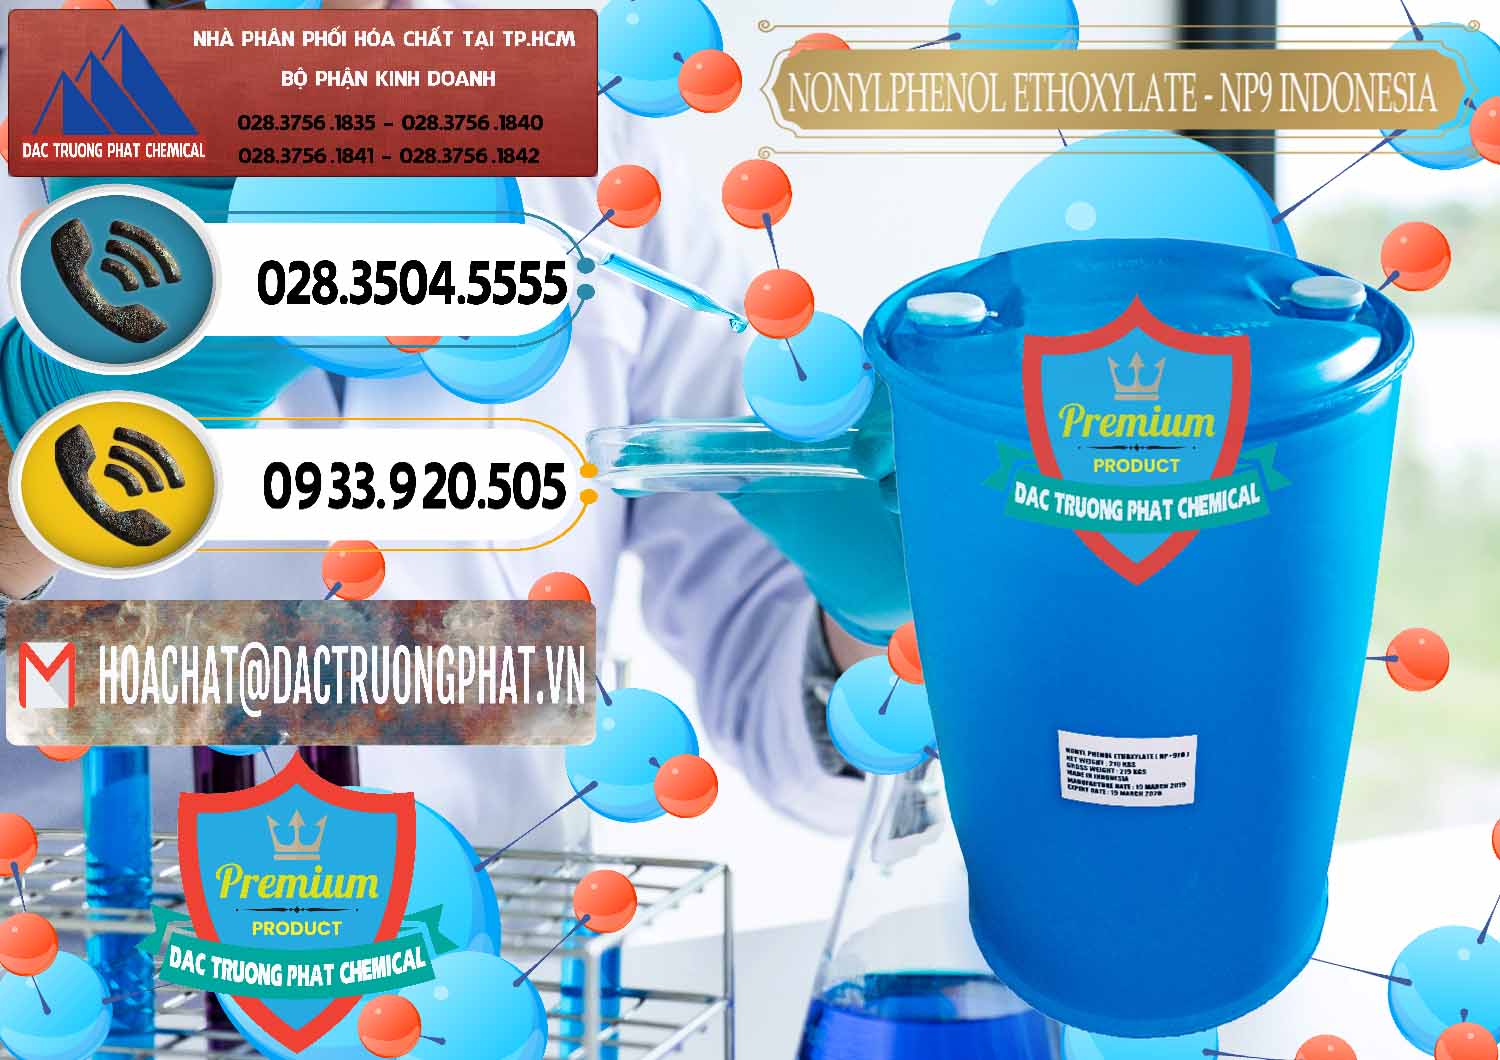 Cung cấp - bán NP9 - Nonyl Phenol Ethoxylate Indonesia - 0317 - Nơi chuyên phân phối và kinh doanh hóa chất tại TP.HCM - hoachatdetnhuom.vn